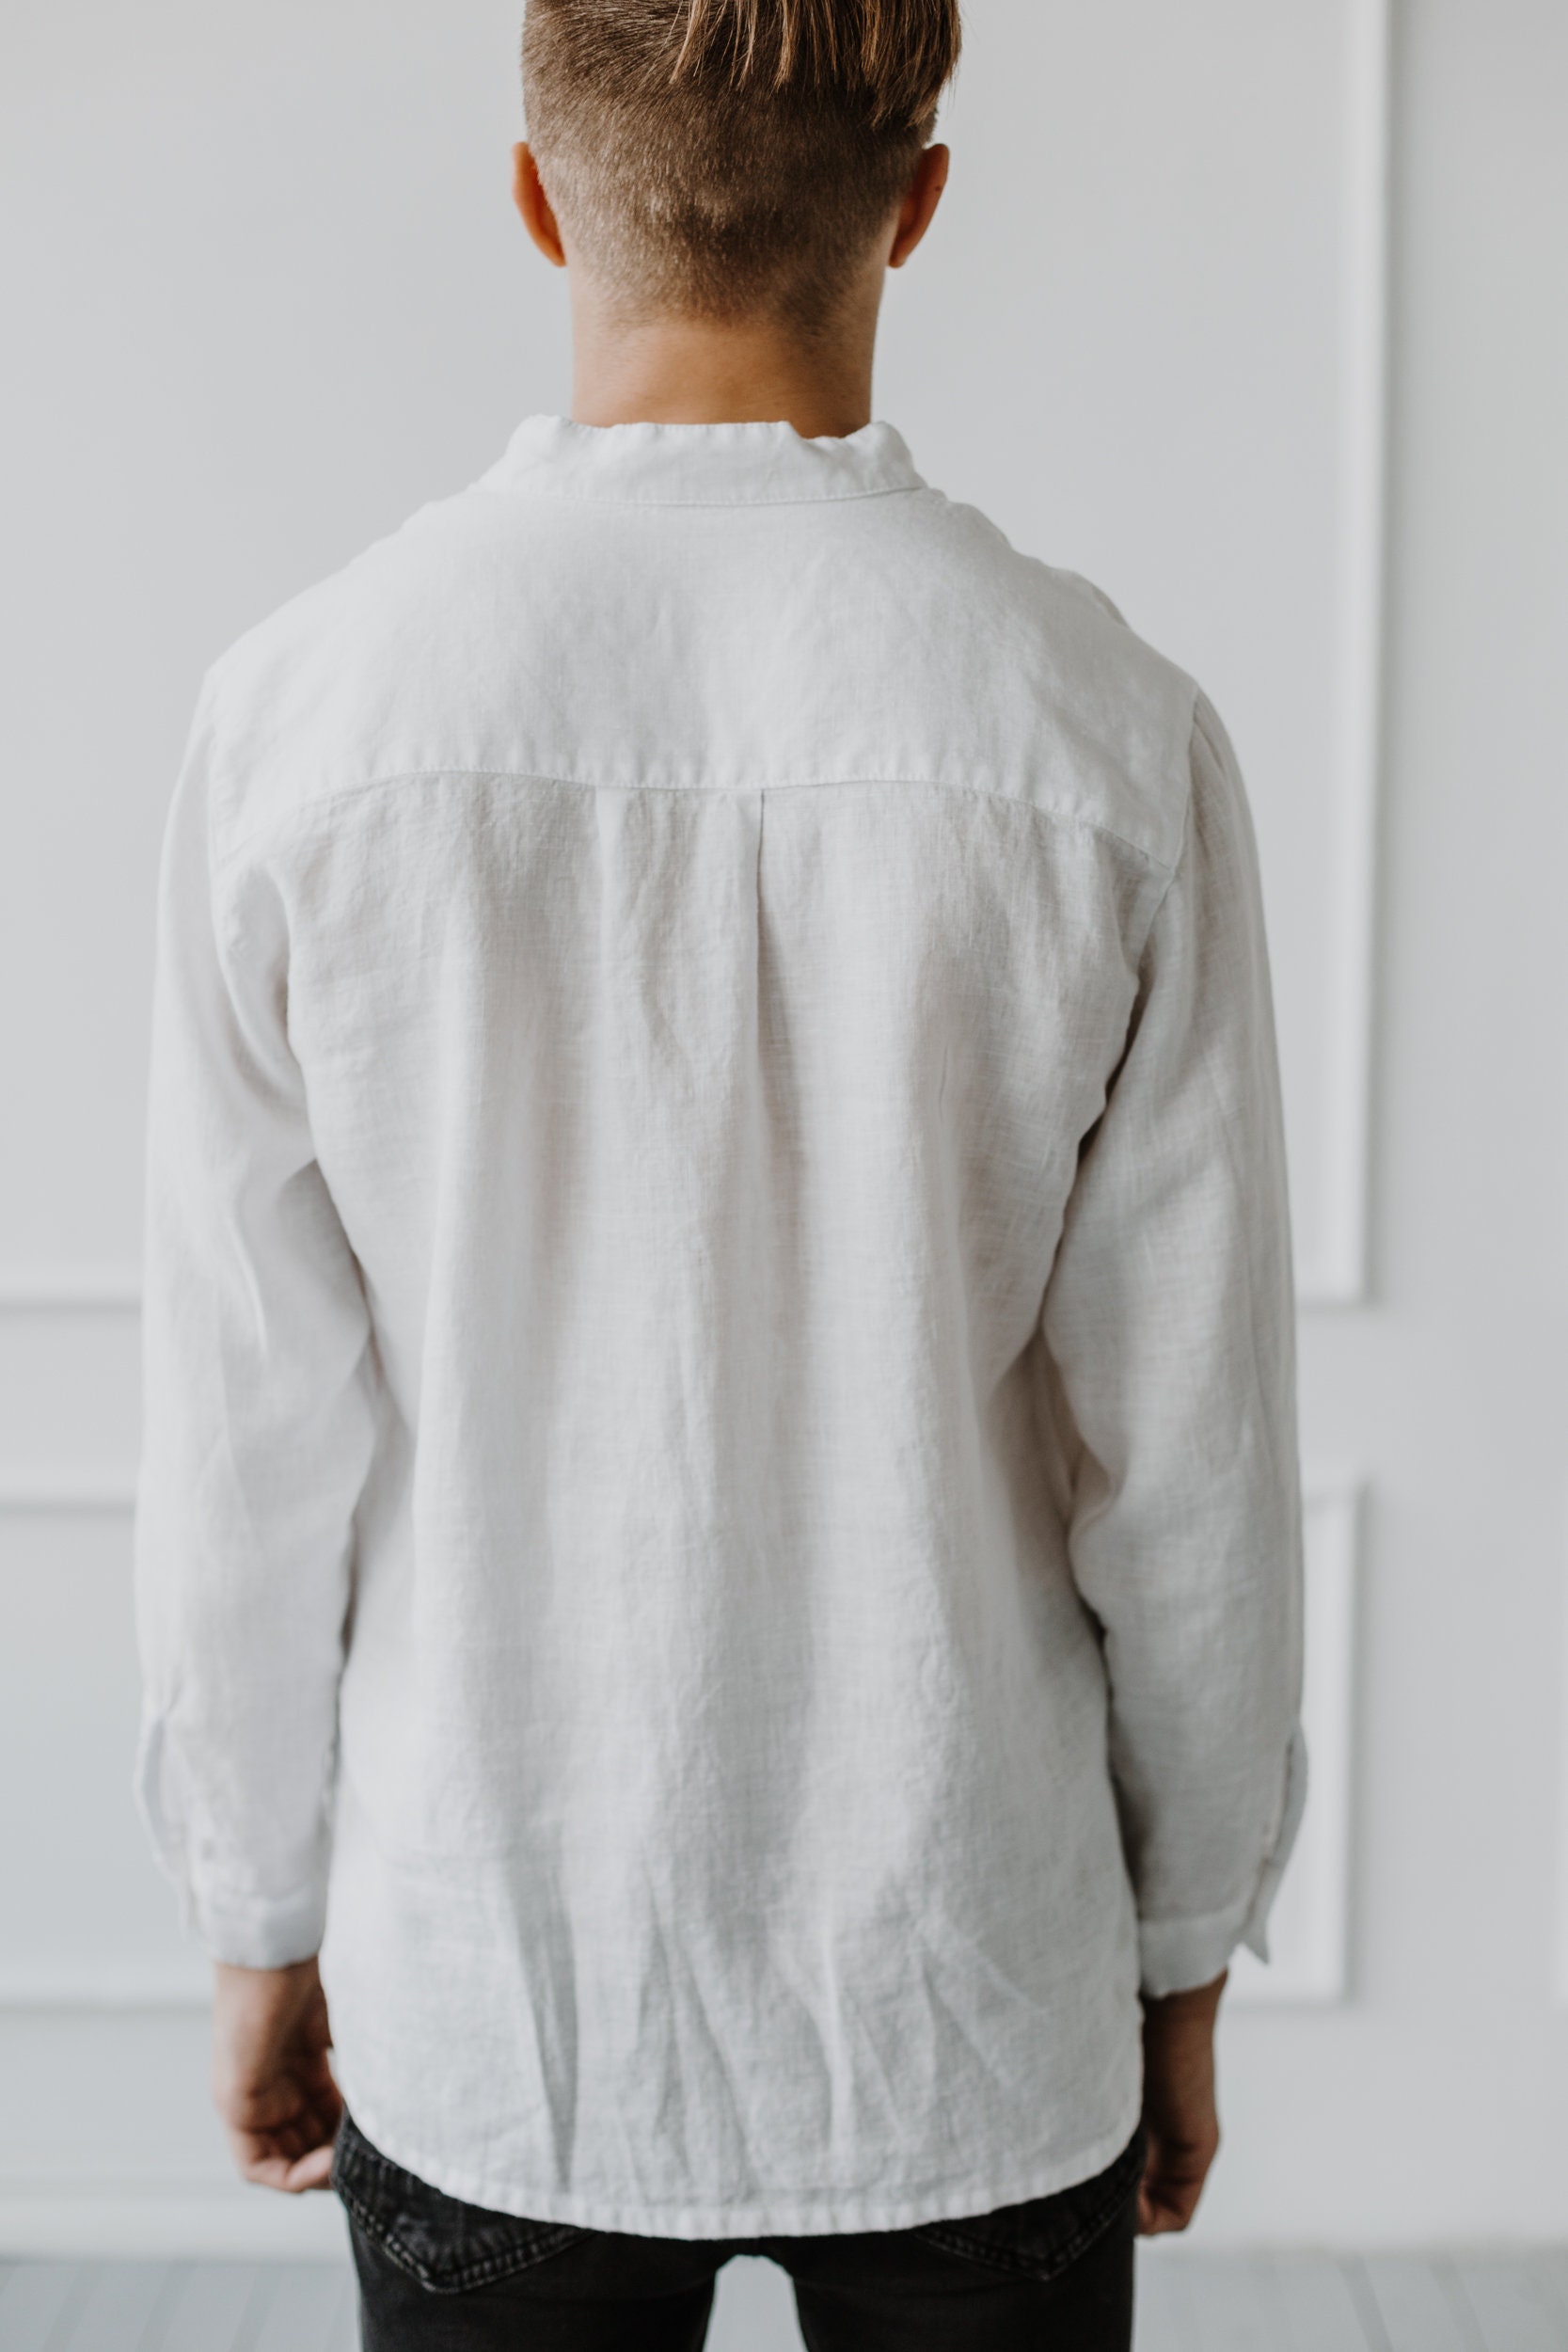 Men's 100% Linen Shirt Men's Shirt Plus Size Unisex - Etsy